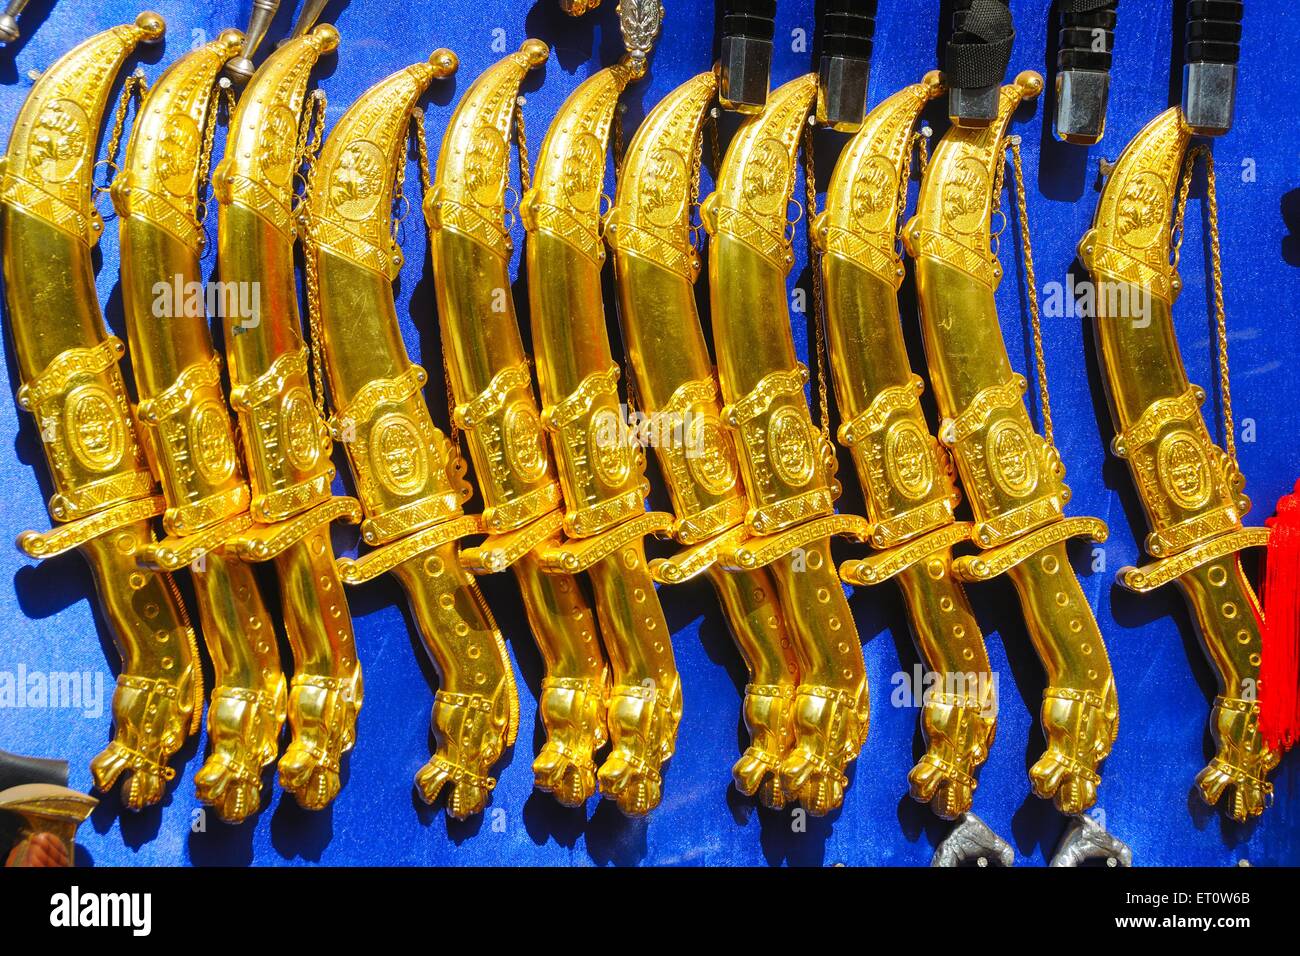 Cuchillos de daga ; Rajasthan ; India Foto de stock